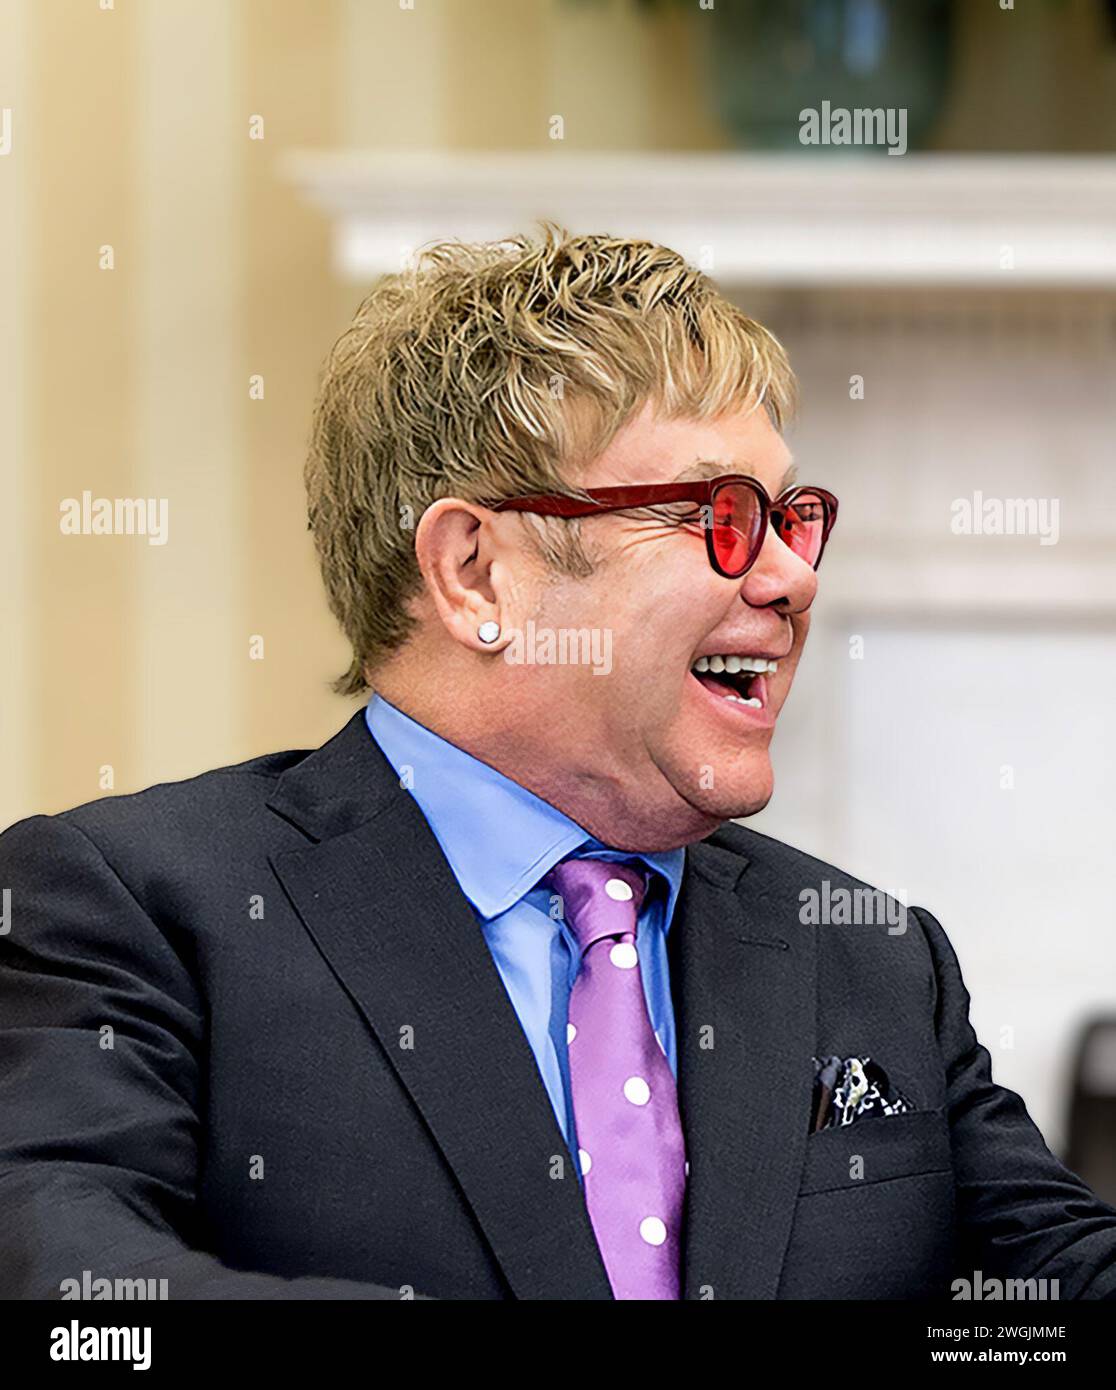 Elton John. Portrait du chanteur et musicien anglais Reginald Kenneth Dwight (né en 1947) à la Maison Blanche en 2015 Banque D'Images